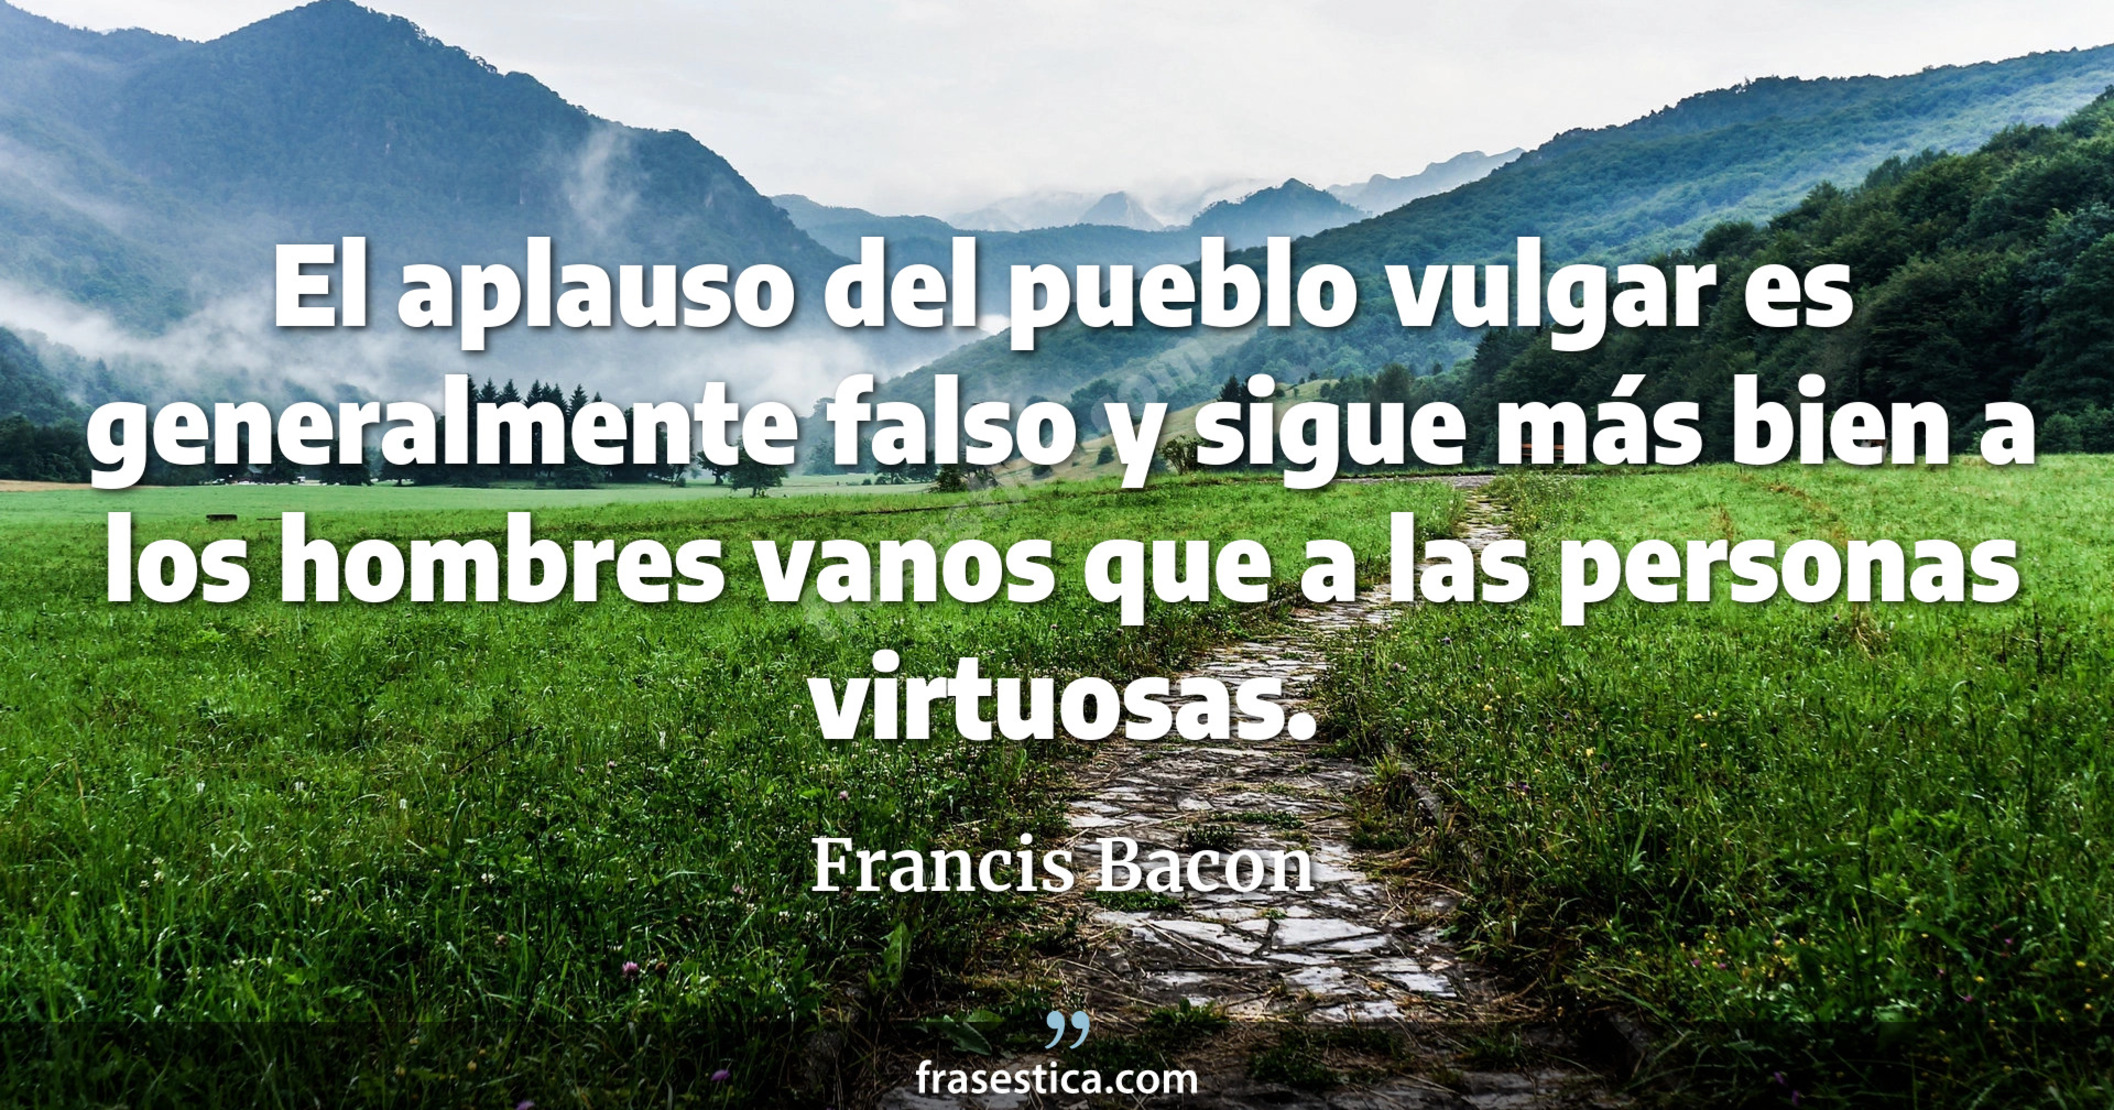 El aplauso del pueblo vulgar es generalmente falso y sigue más bien a los hombres vanos que a las personas virtuosas. - Francis Bacon